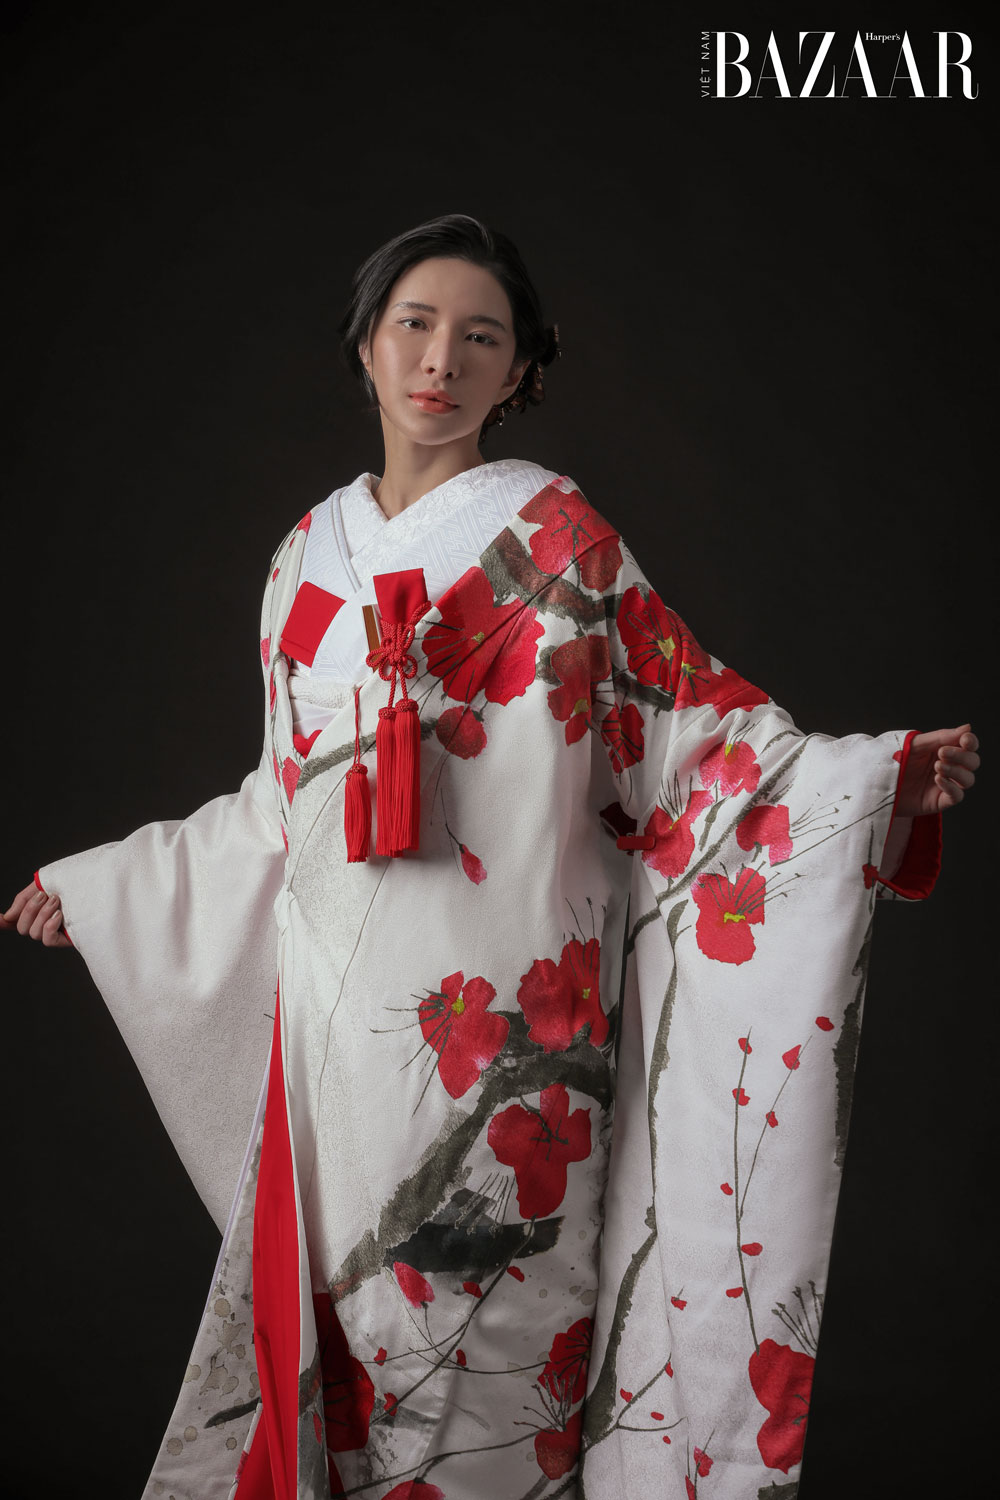 Sayo in kimono